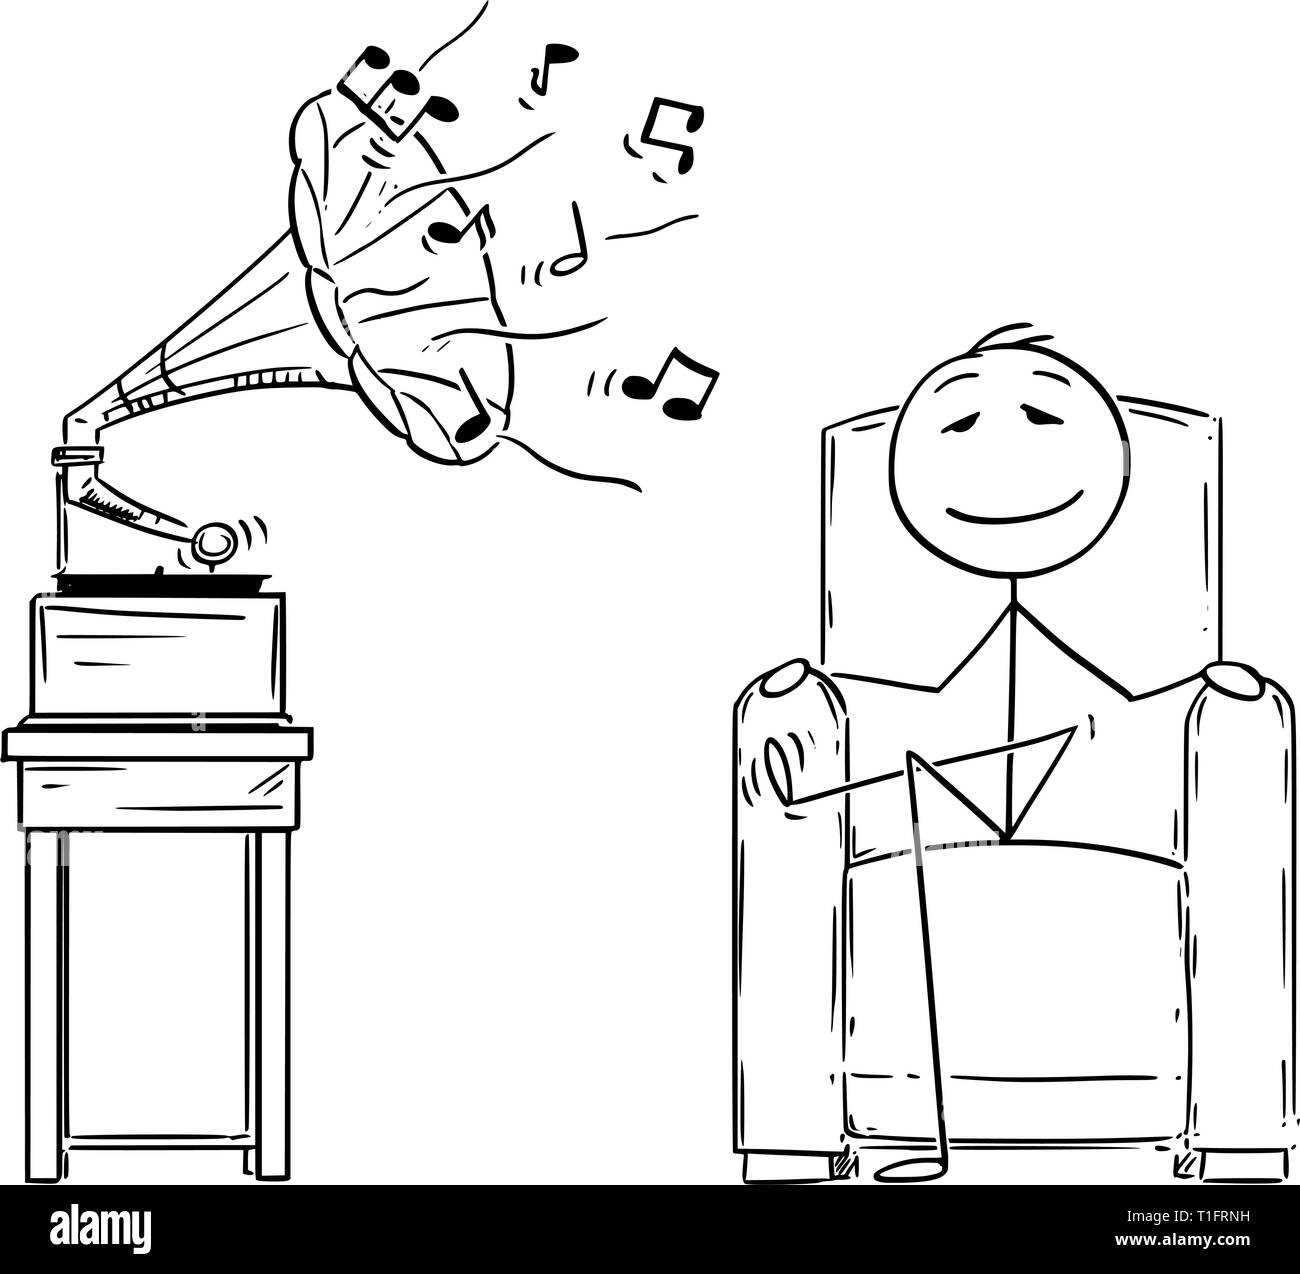 Cartoon stick figure dessin illustration conceptuelle de l'homme assis dans un fauteuil confortable et profiter de l'audience de la musique de gramophone ancien avec les yeux fermés. Illustration de Vecteur